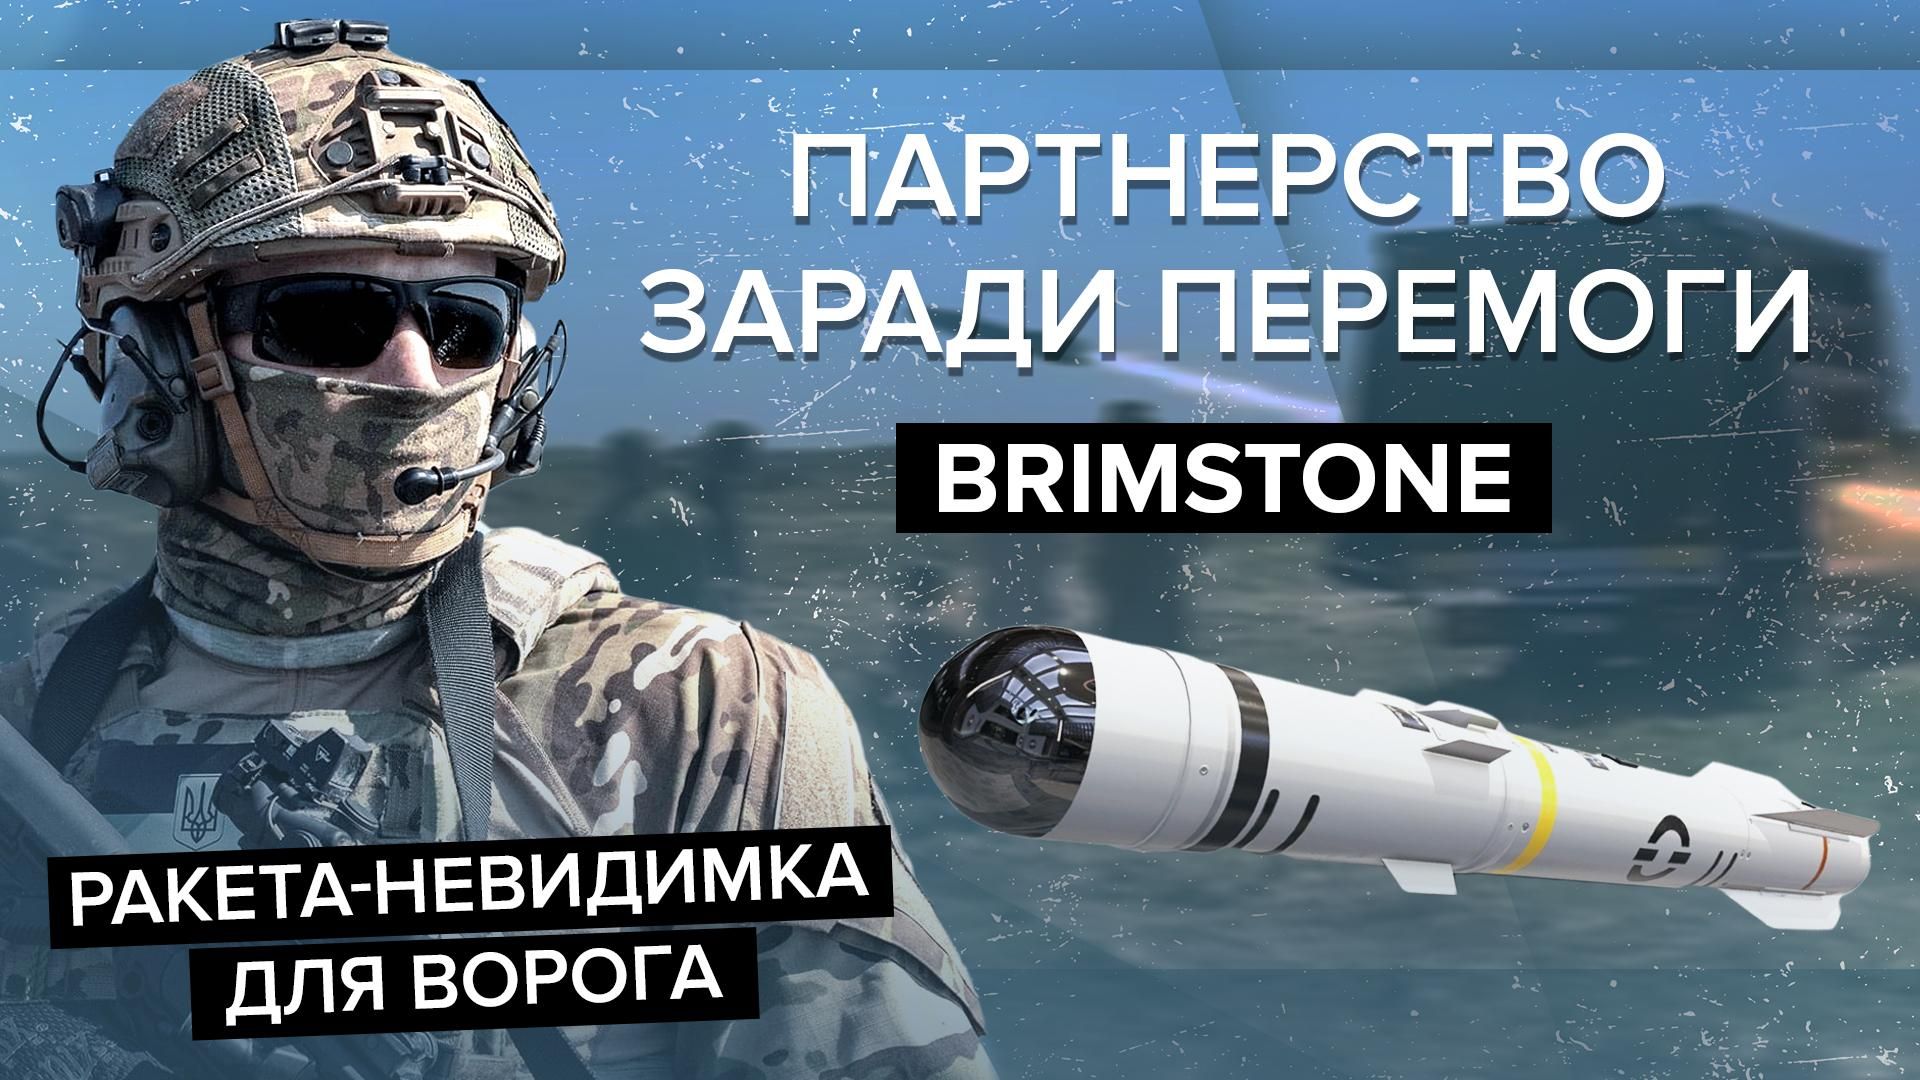 Brimstone - на что способны сверхмощные ракеты - характеристика - 24 Канал